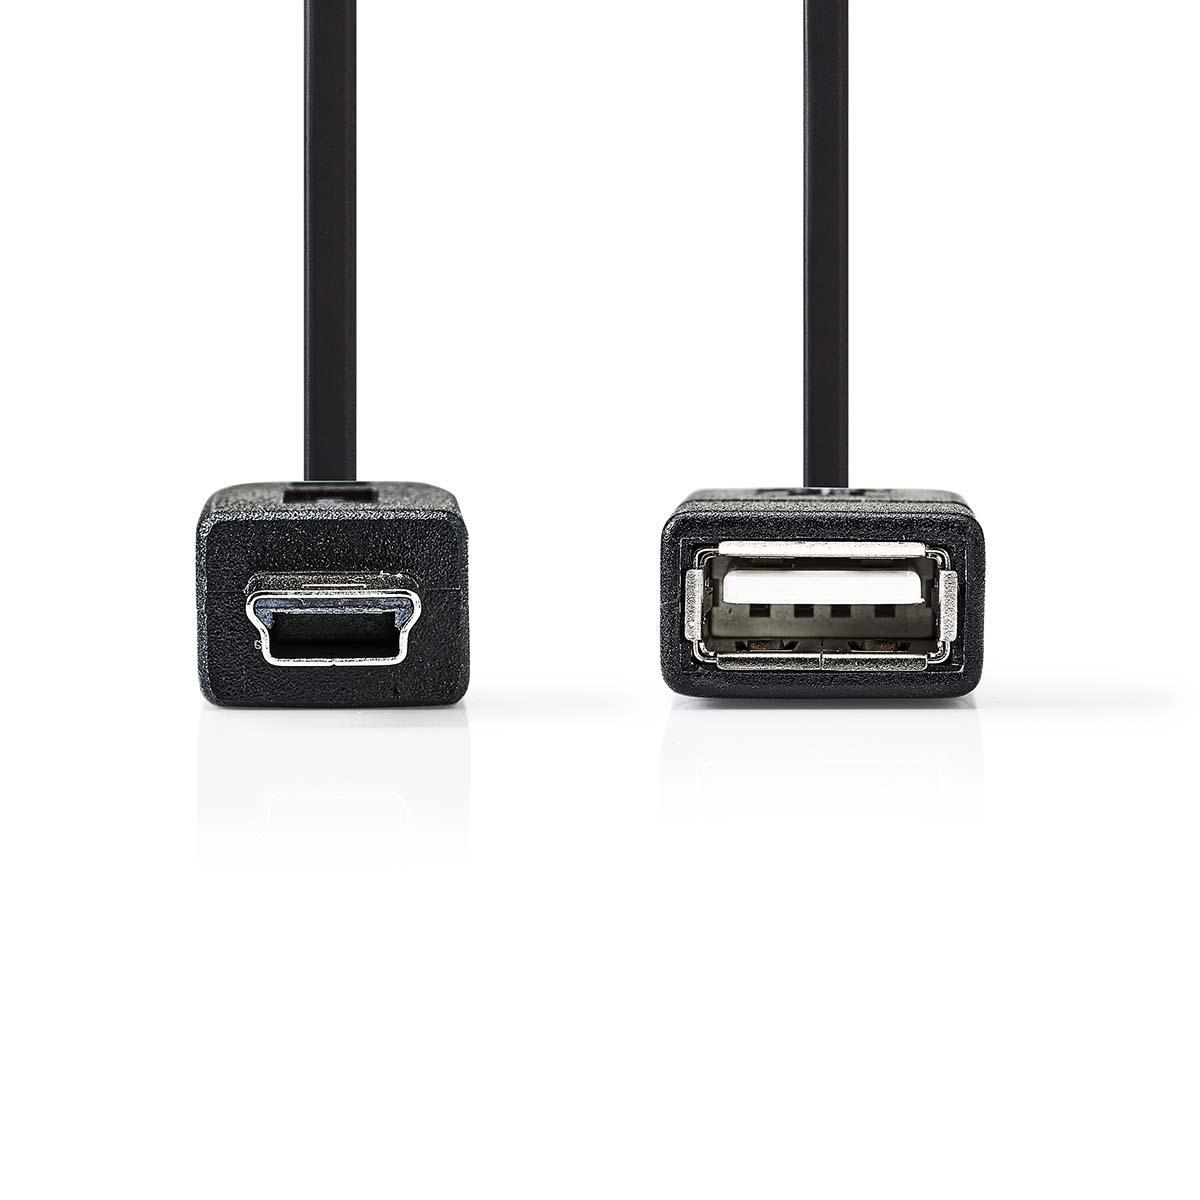 Adapter USB Micro-B CCGP60315BK02 NEDIS